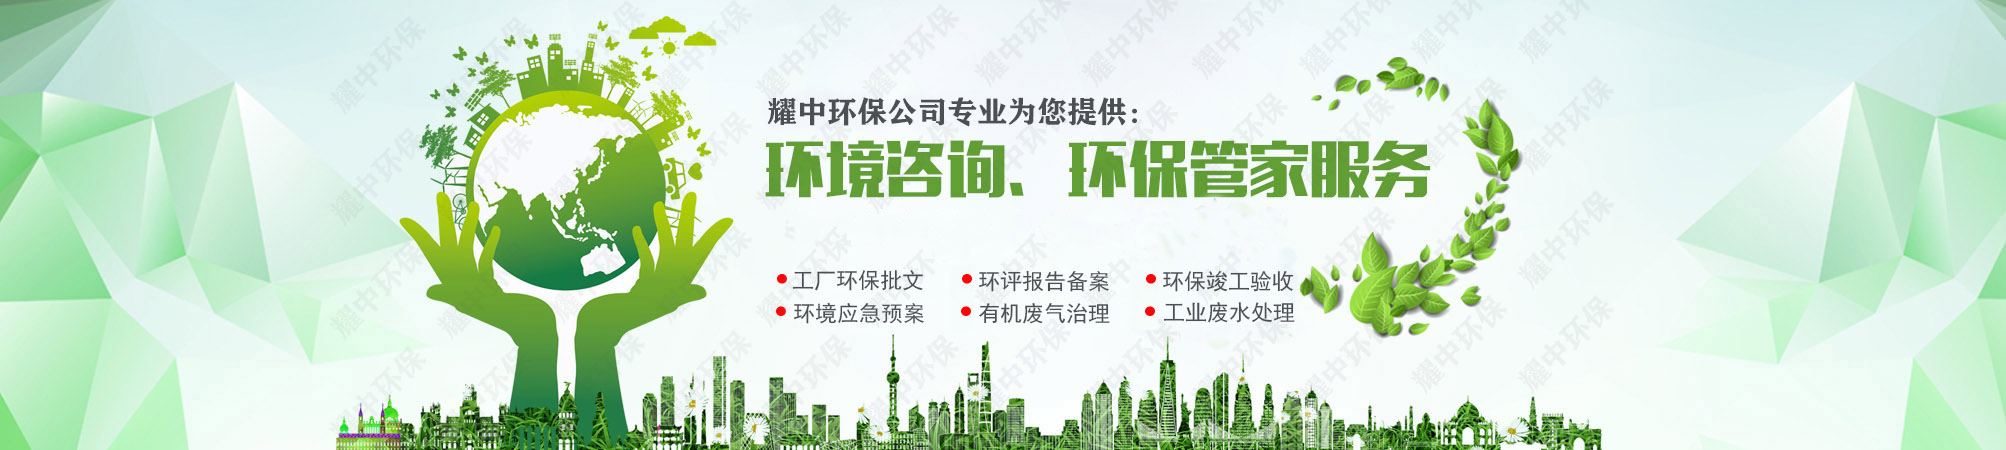 深圳丝印废气处理工程公司,宝安航城树脂厂工业废气治理工程公司